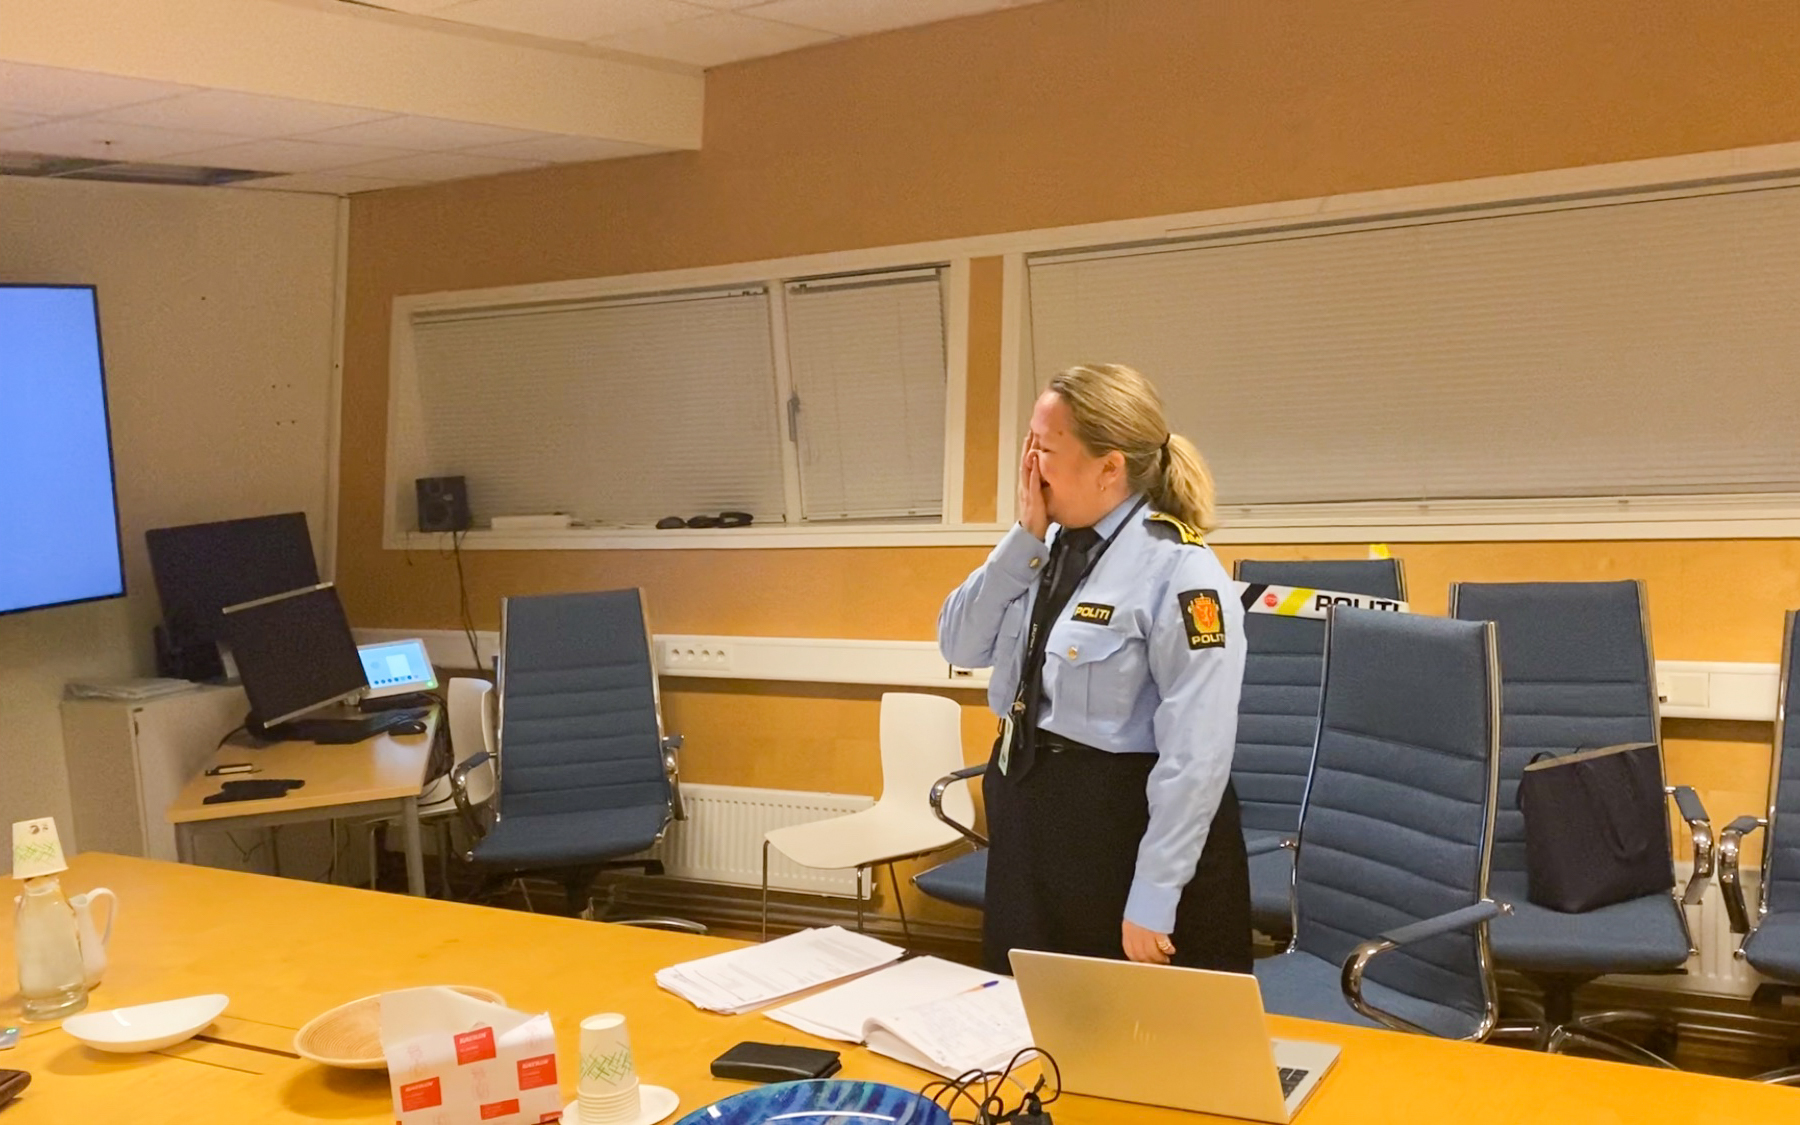 Eli Fryjordet skjønner hun er årets leder i politiet 2020